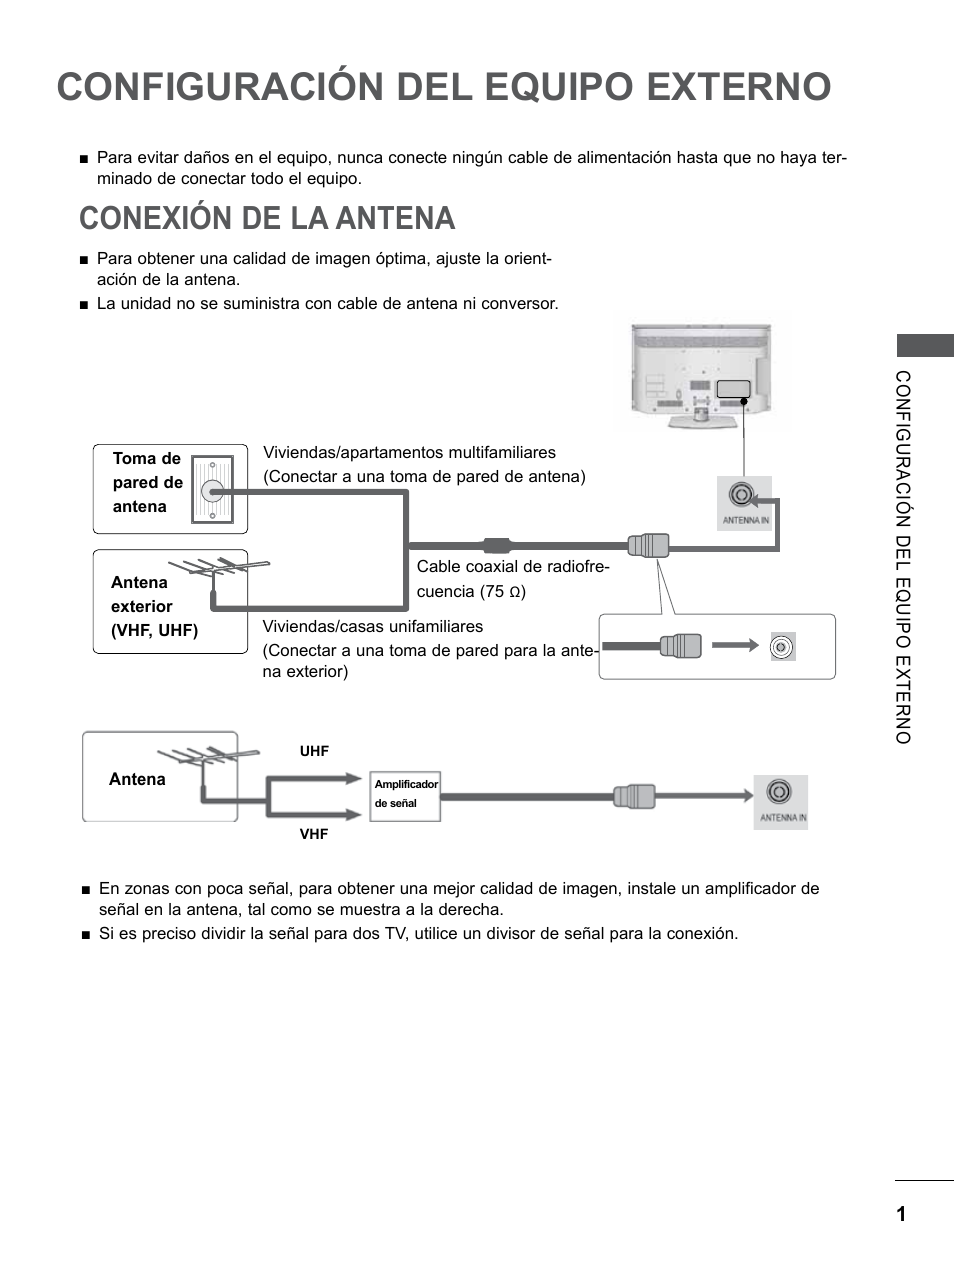 Configuración del equipo externo, Conexión de la antena, Configuración del equipo | Externo | LG 55LE5300 Manual del usuario | Página 49 / 206